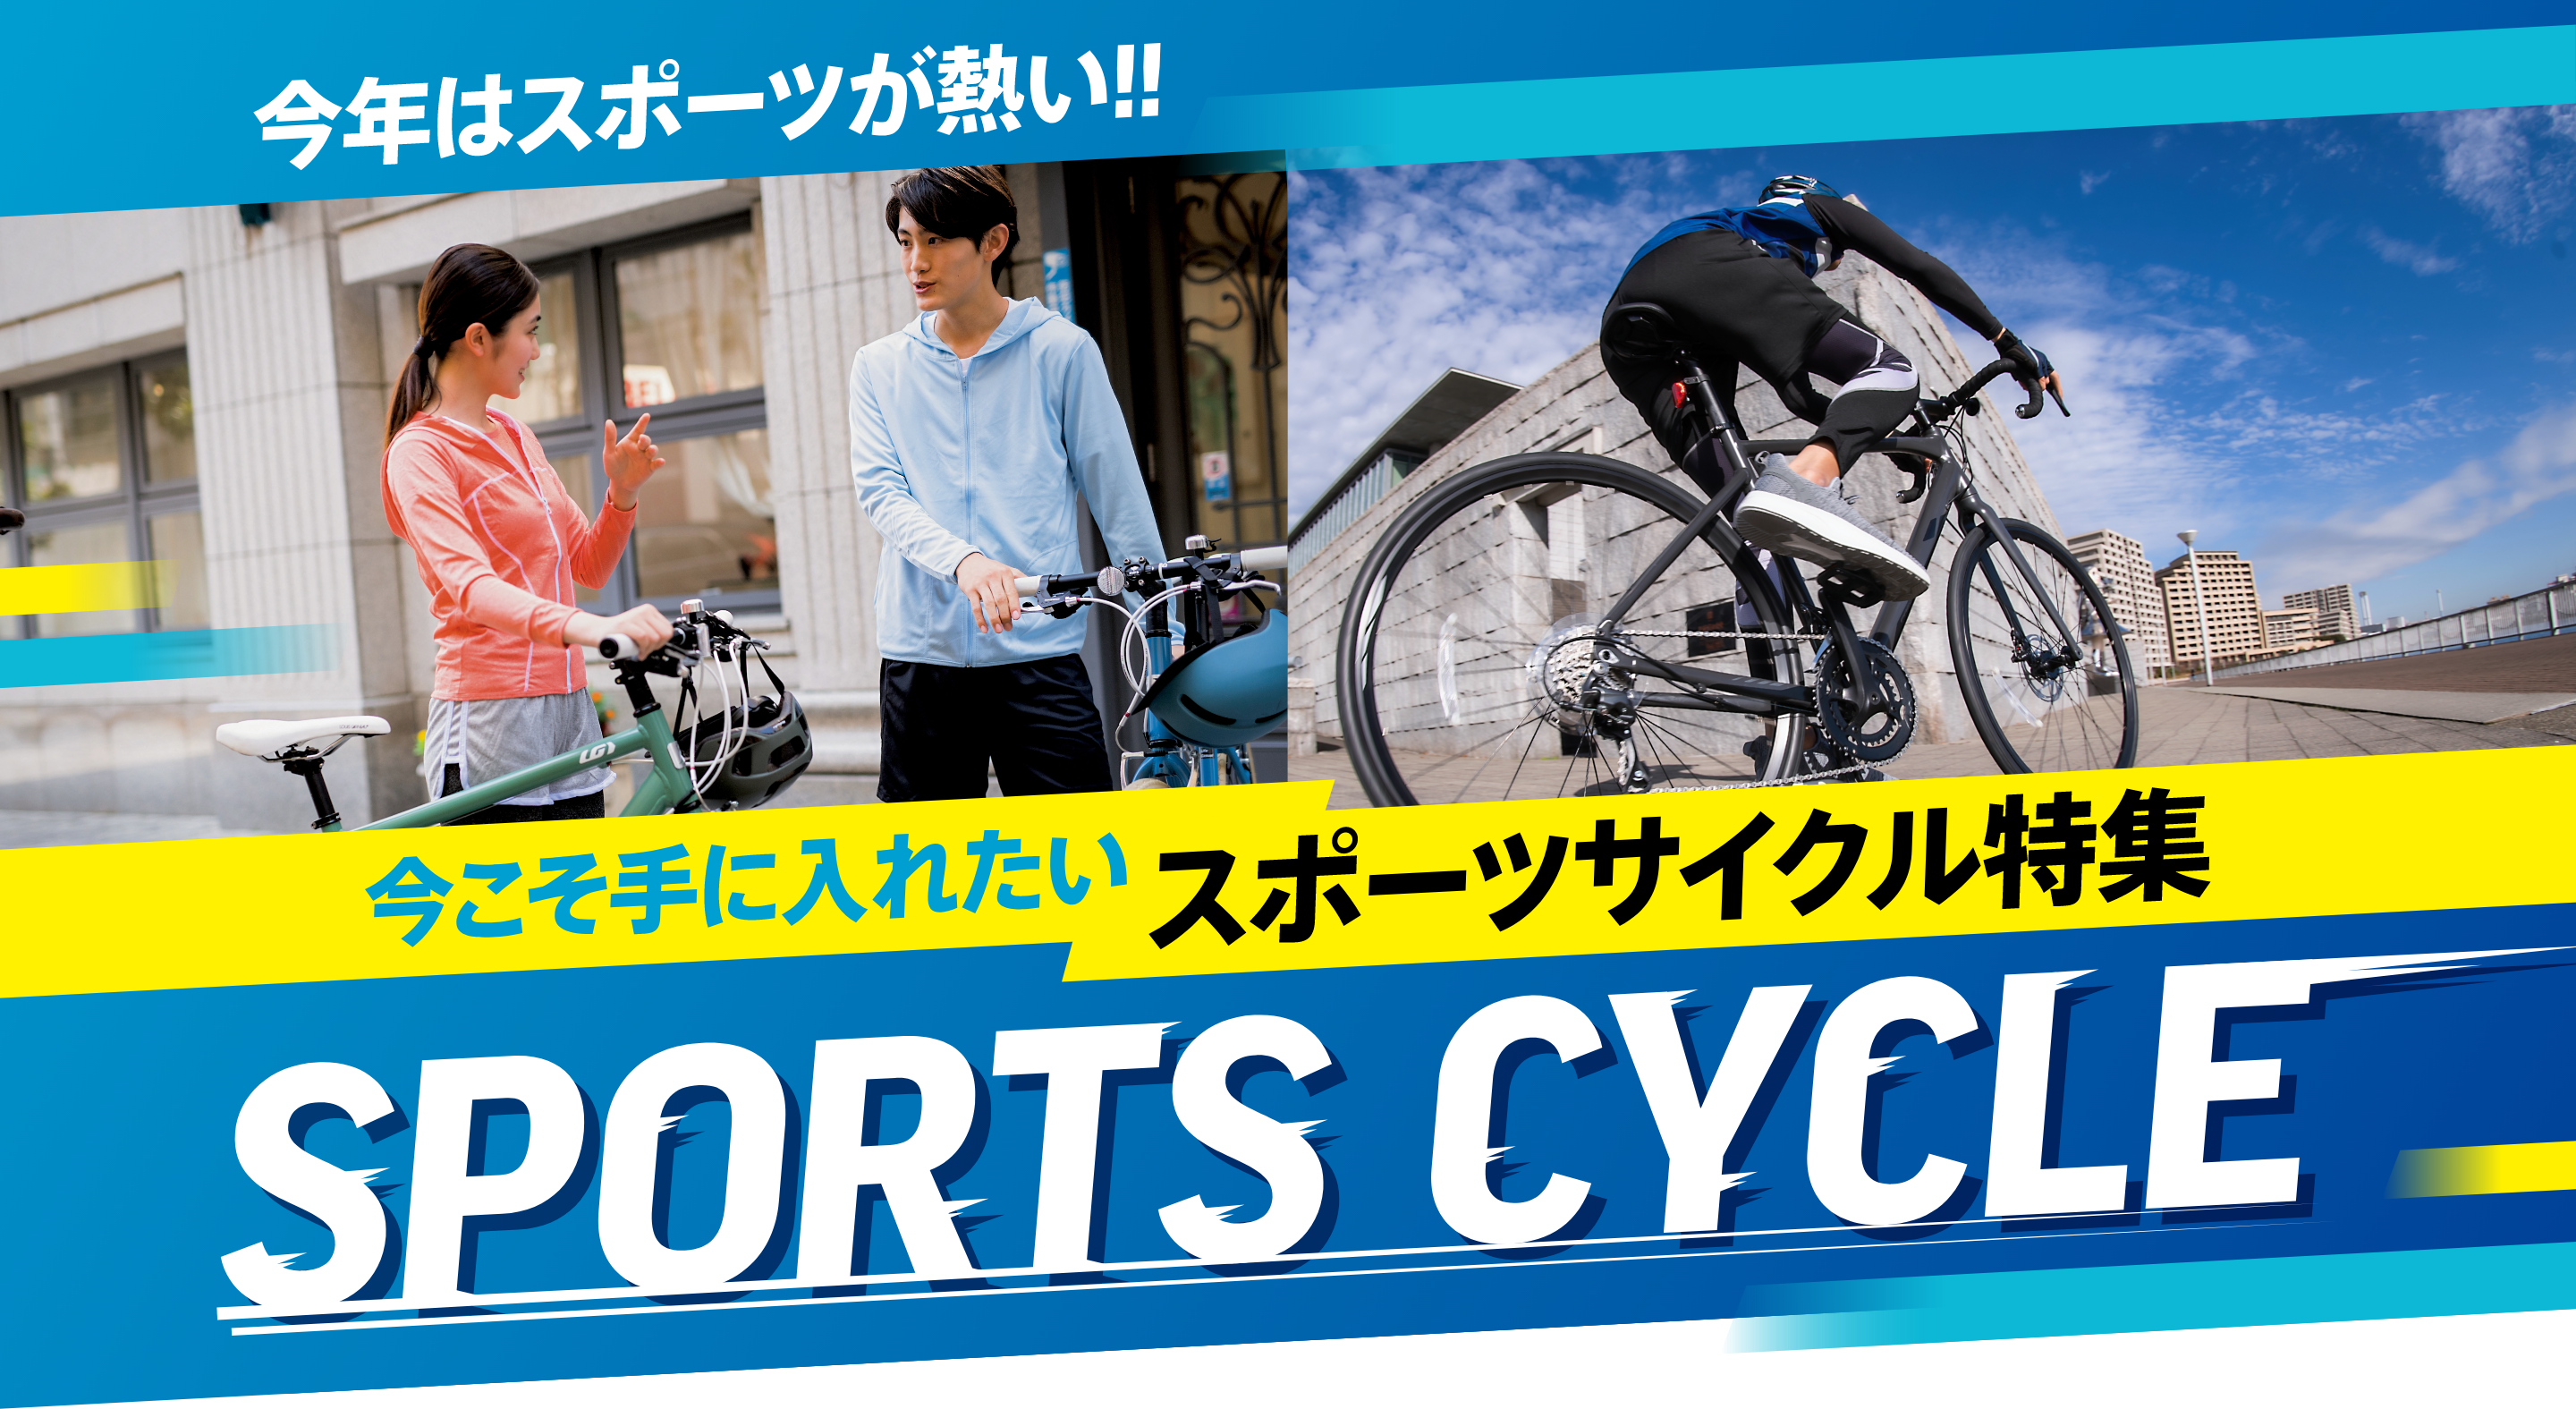 今年はスポーツが熱い!! 今こそ手に入れたいスポーツサイクル特集 SPORTS CYCLE